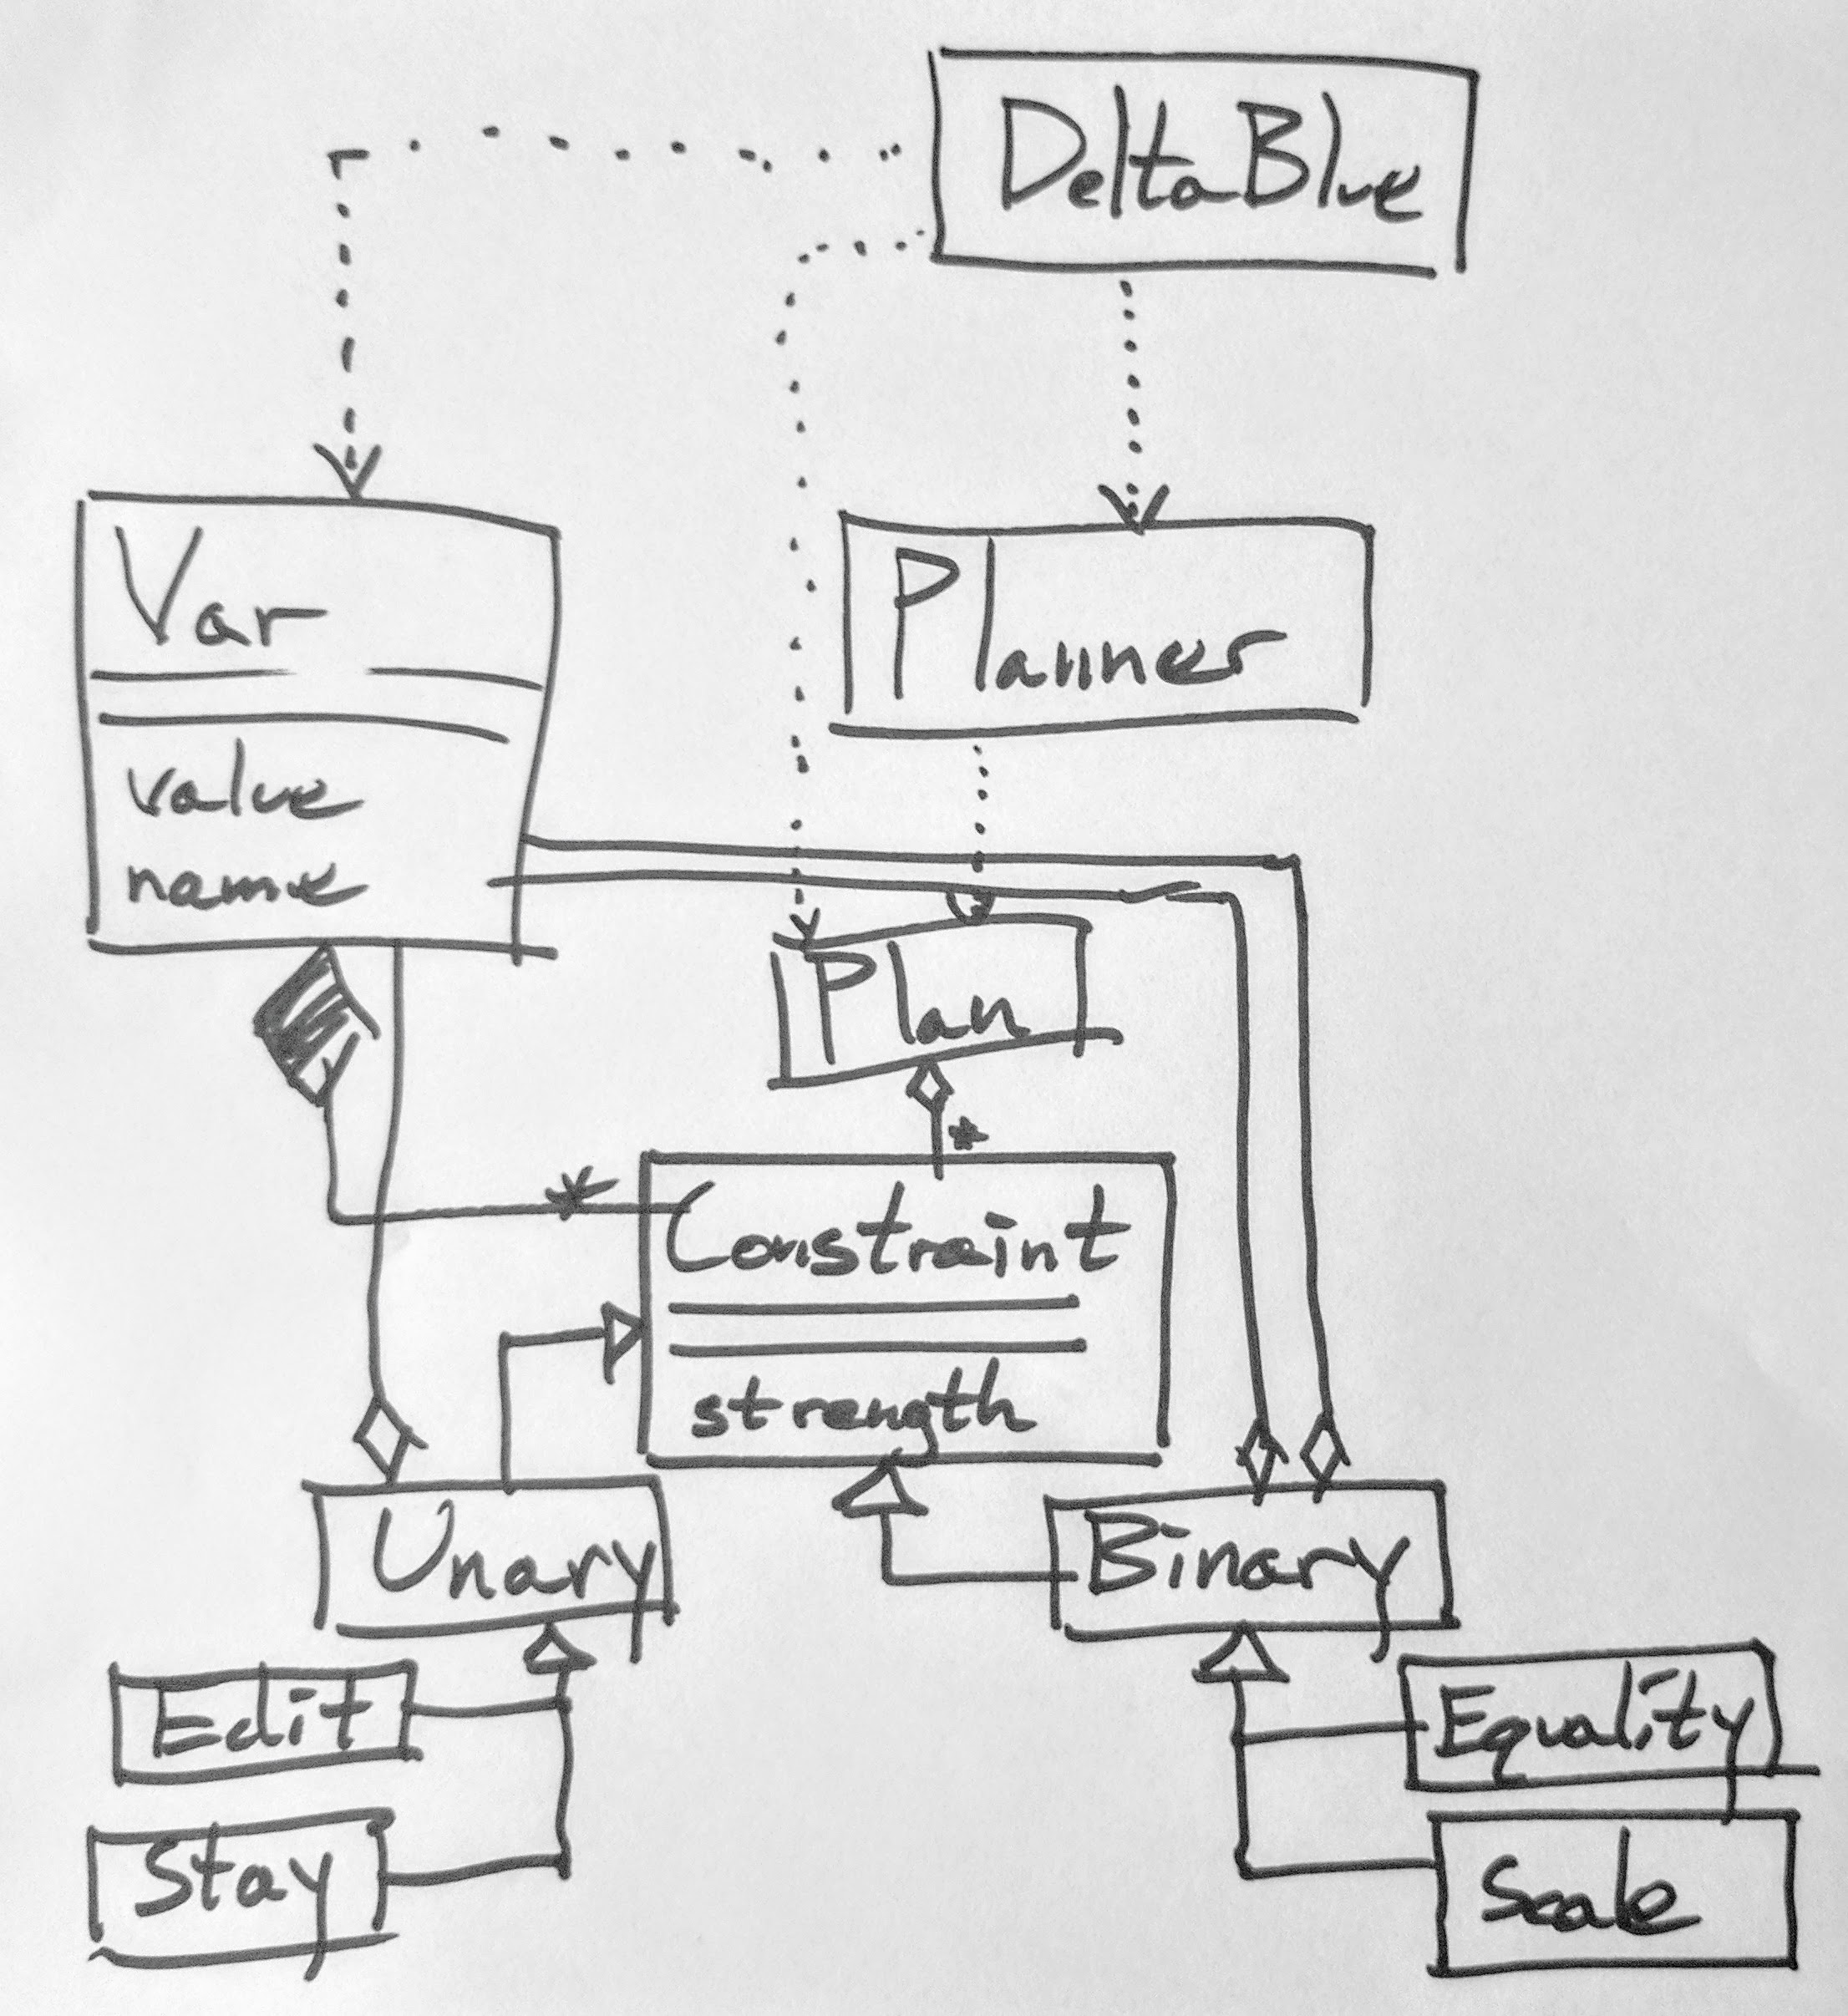 less tangled UML diagram of DeltaBlue